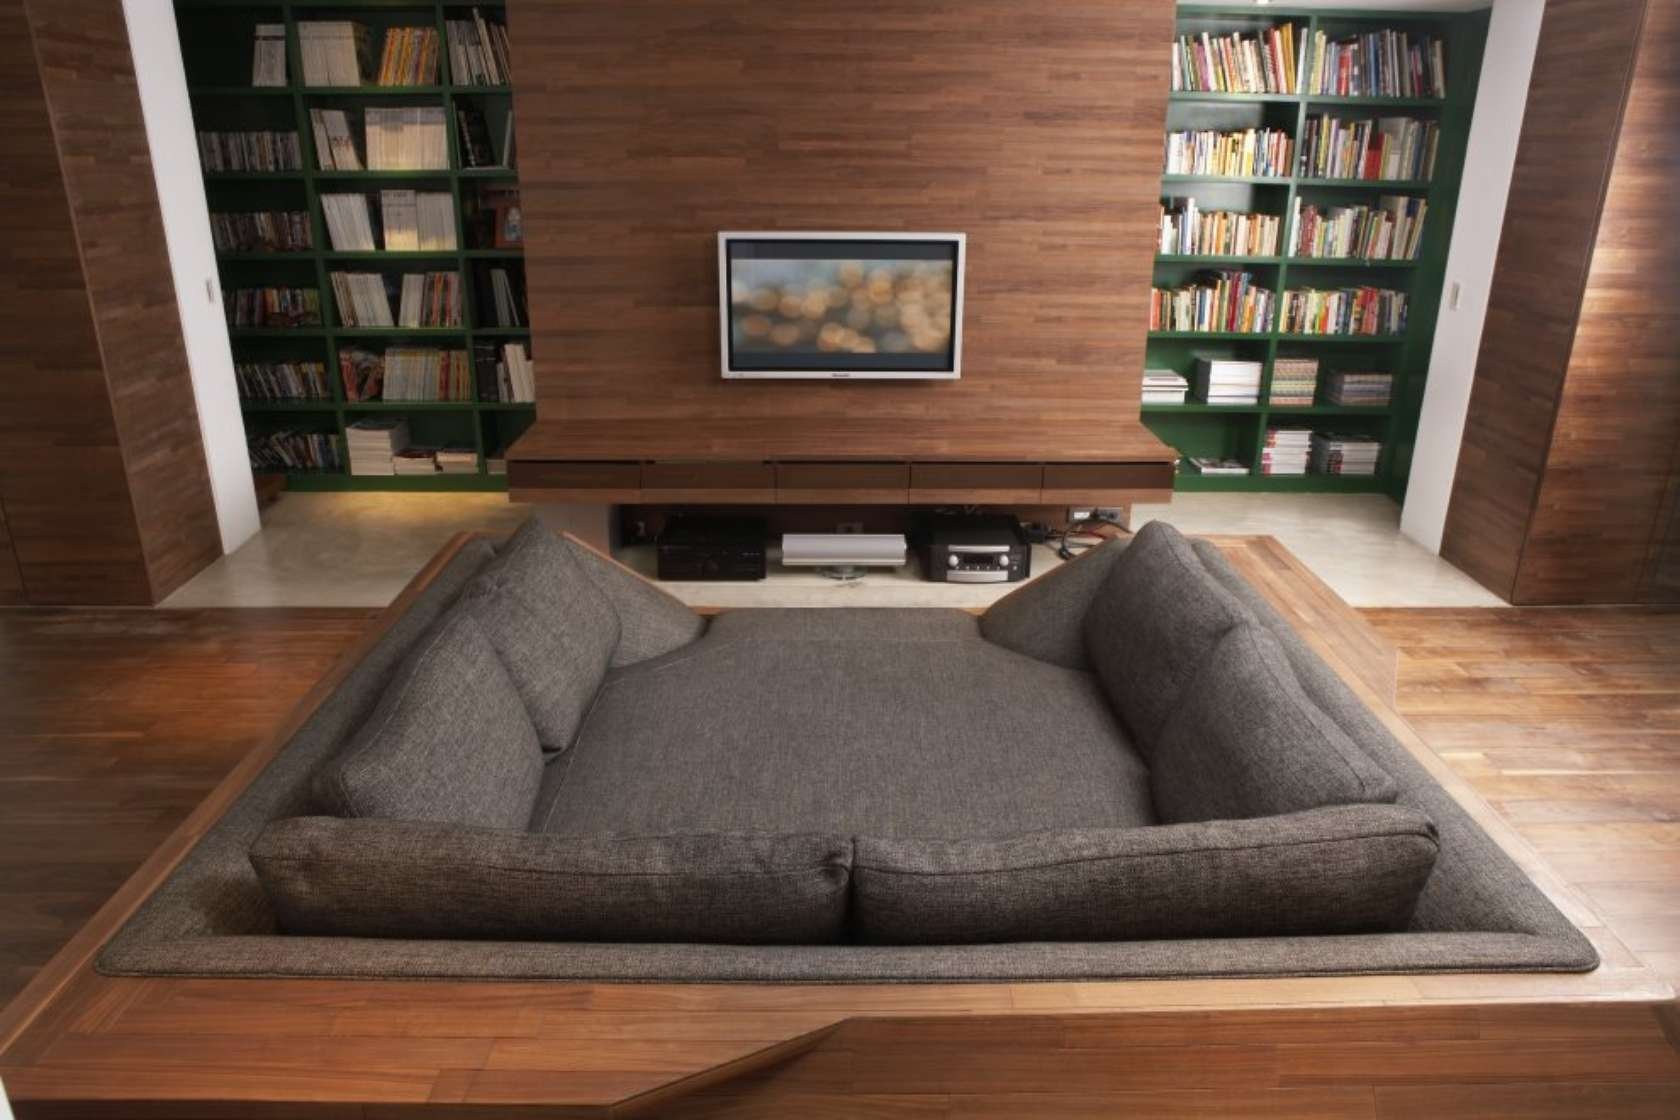 подушки для пола вместо дивана